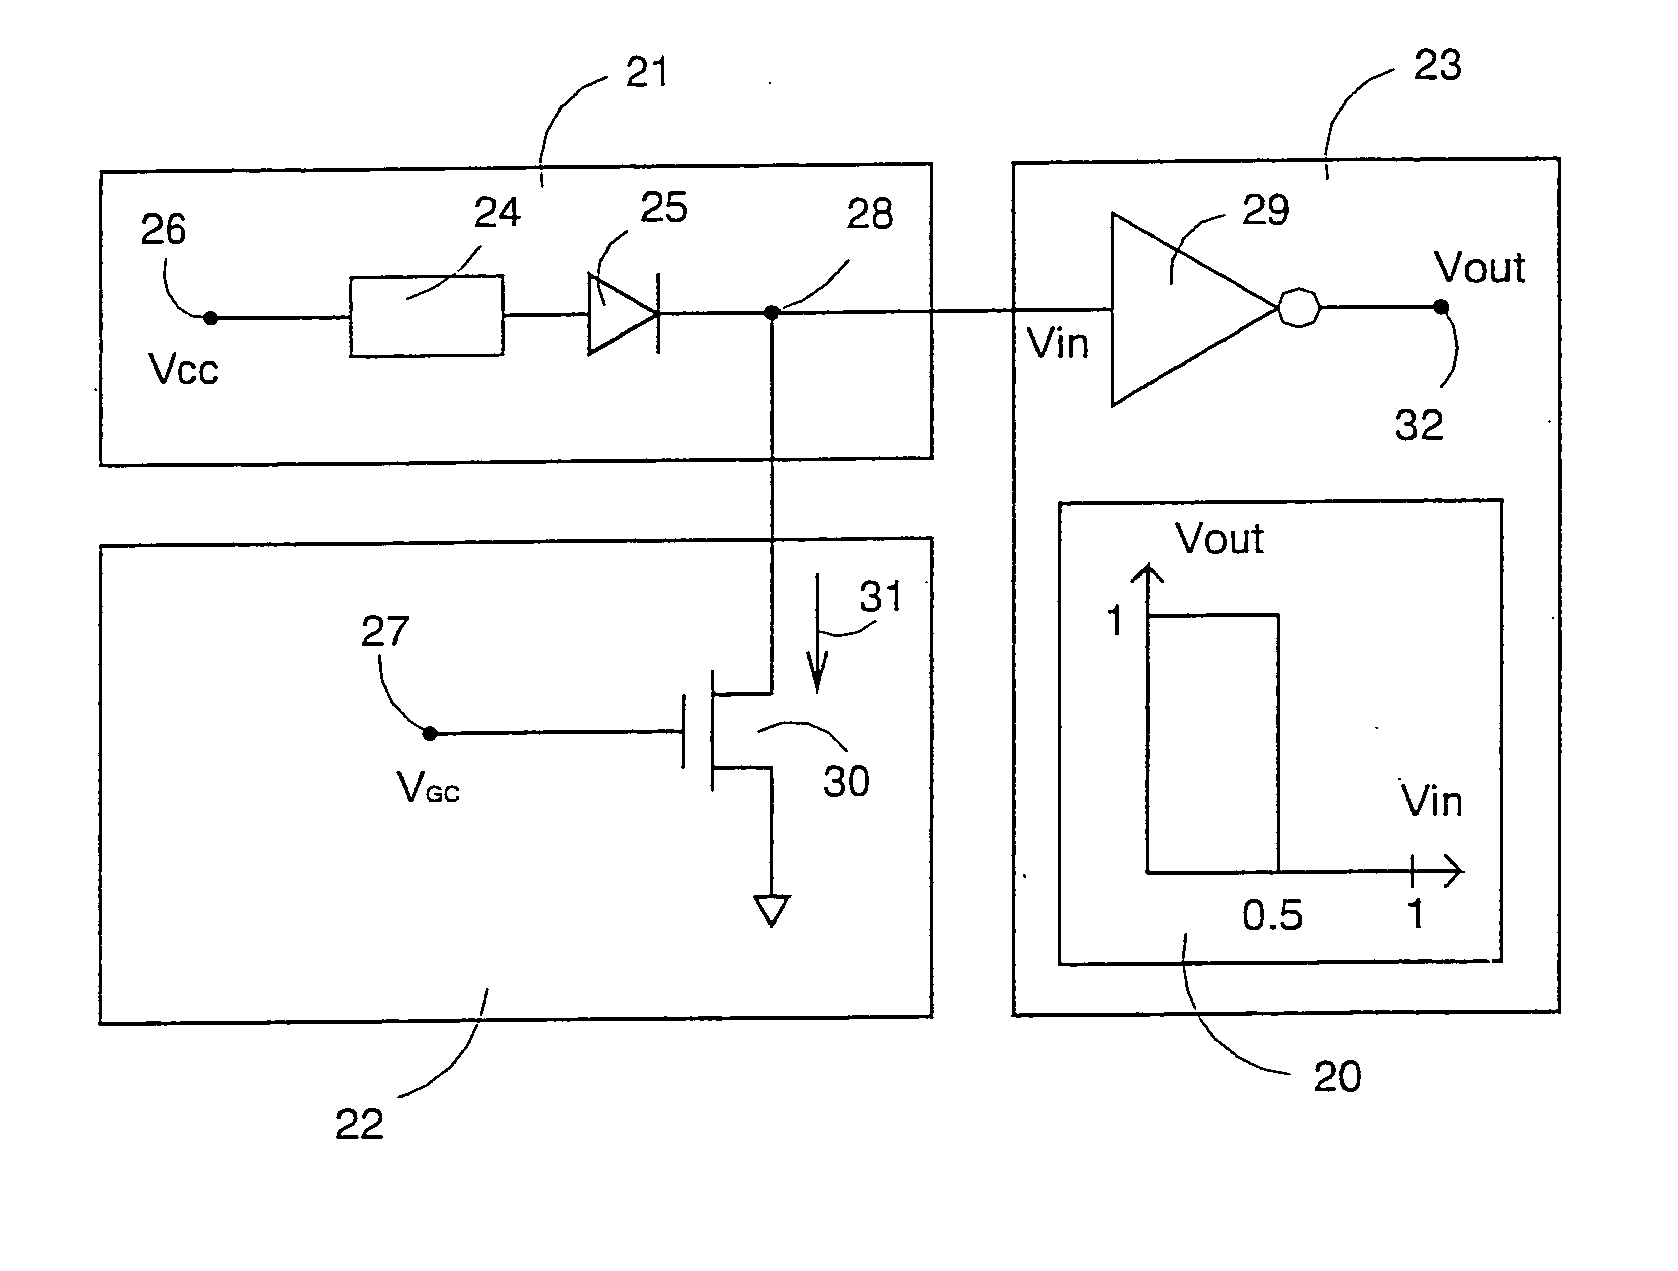 RRAM circuit with temperature compensation